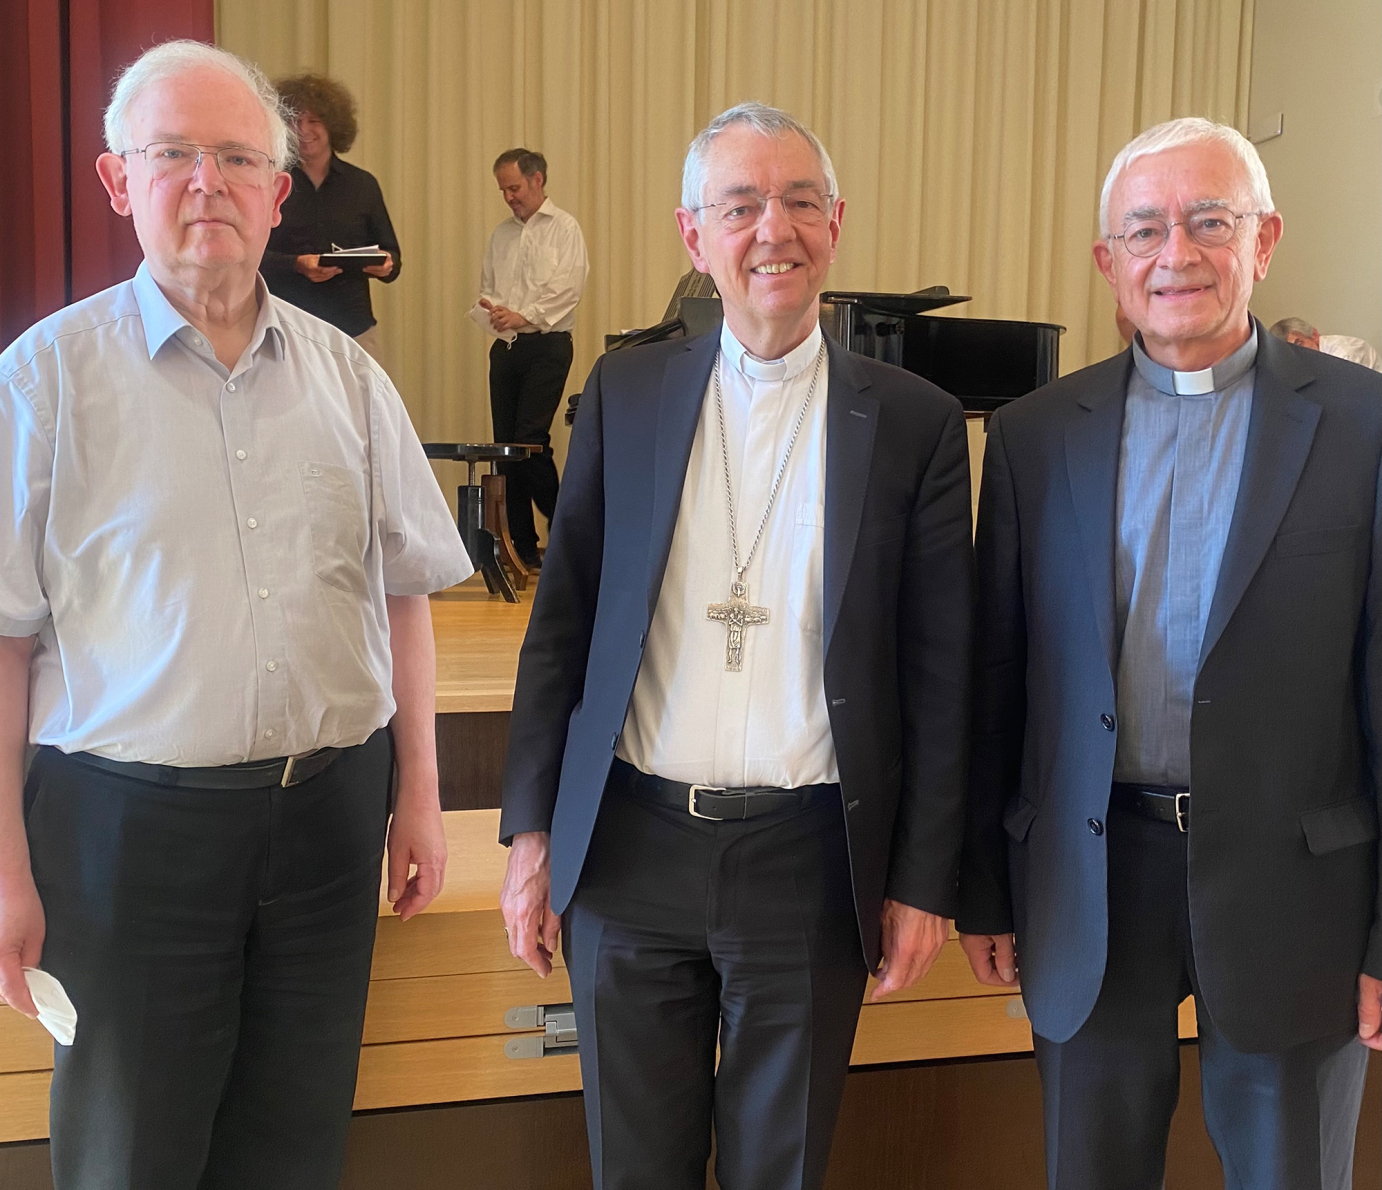 Domkapitular Peter Wünsche (links) und Domkapitular Hans Schieber (rechts) wurden am 19.7.2022 von Erzbischof Ludwig Schick in den Ruhestand verabschiedet